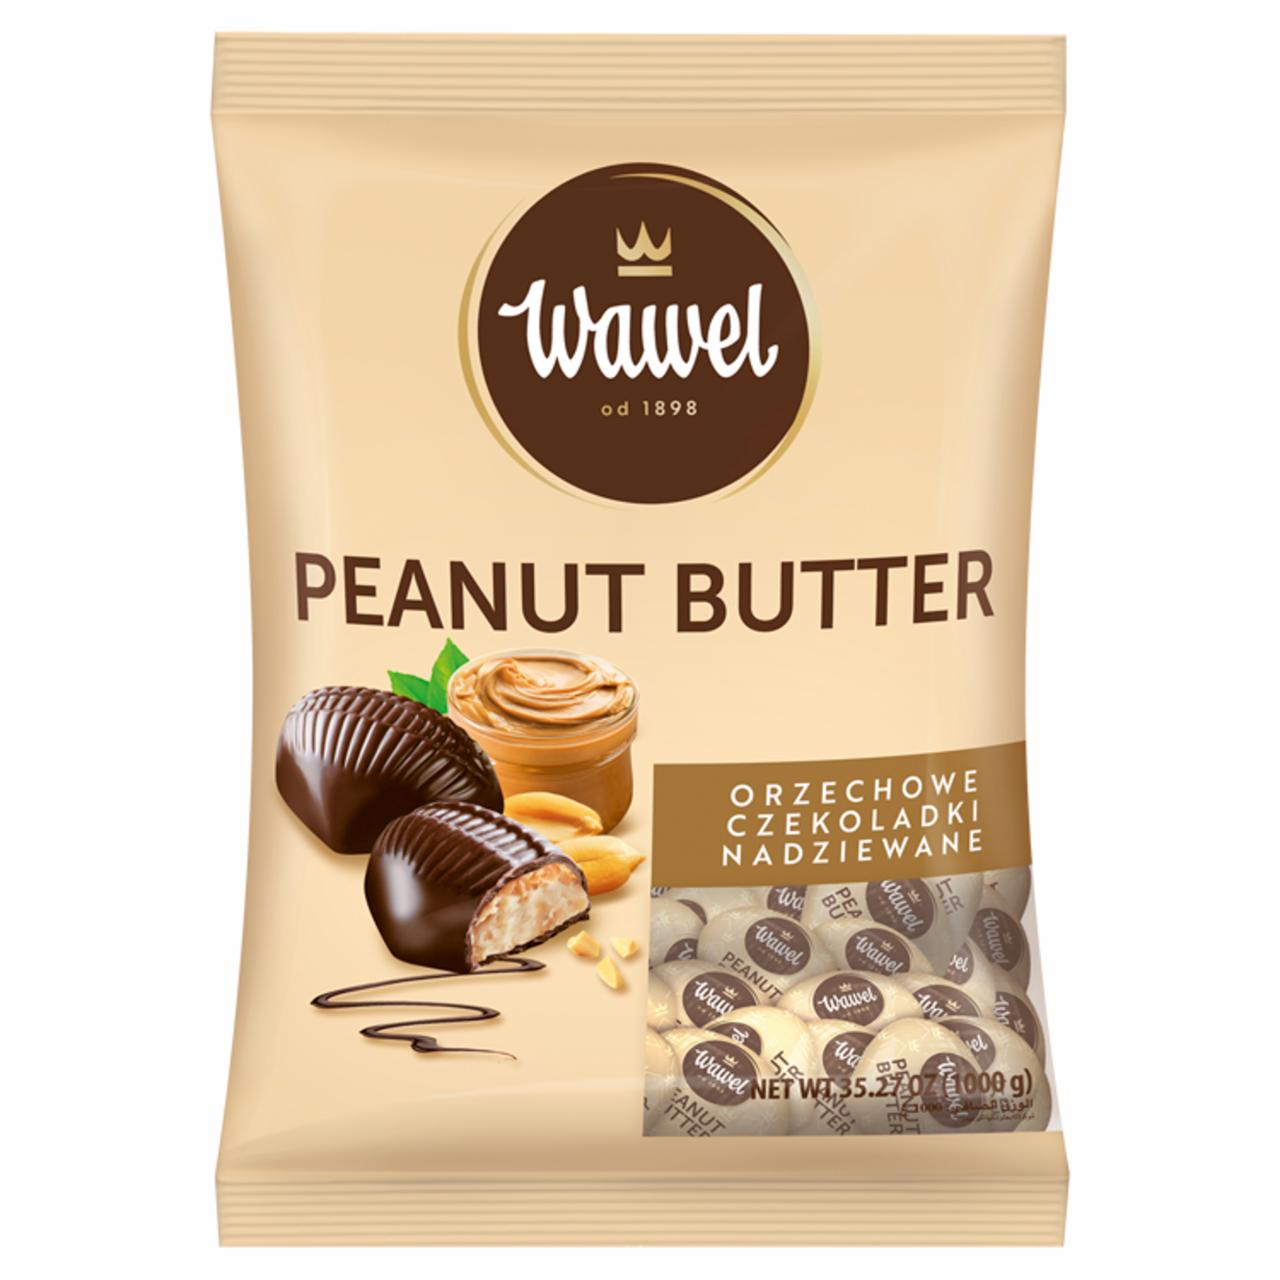 Zdjęcia - Wawel Peanut Butter Orzechowe czekoladki nadziewane 1000 g